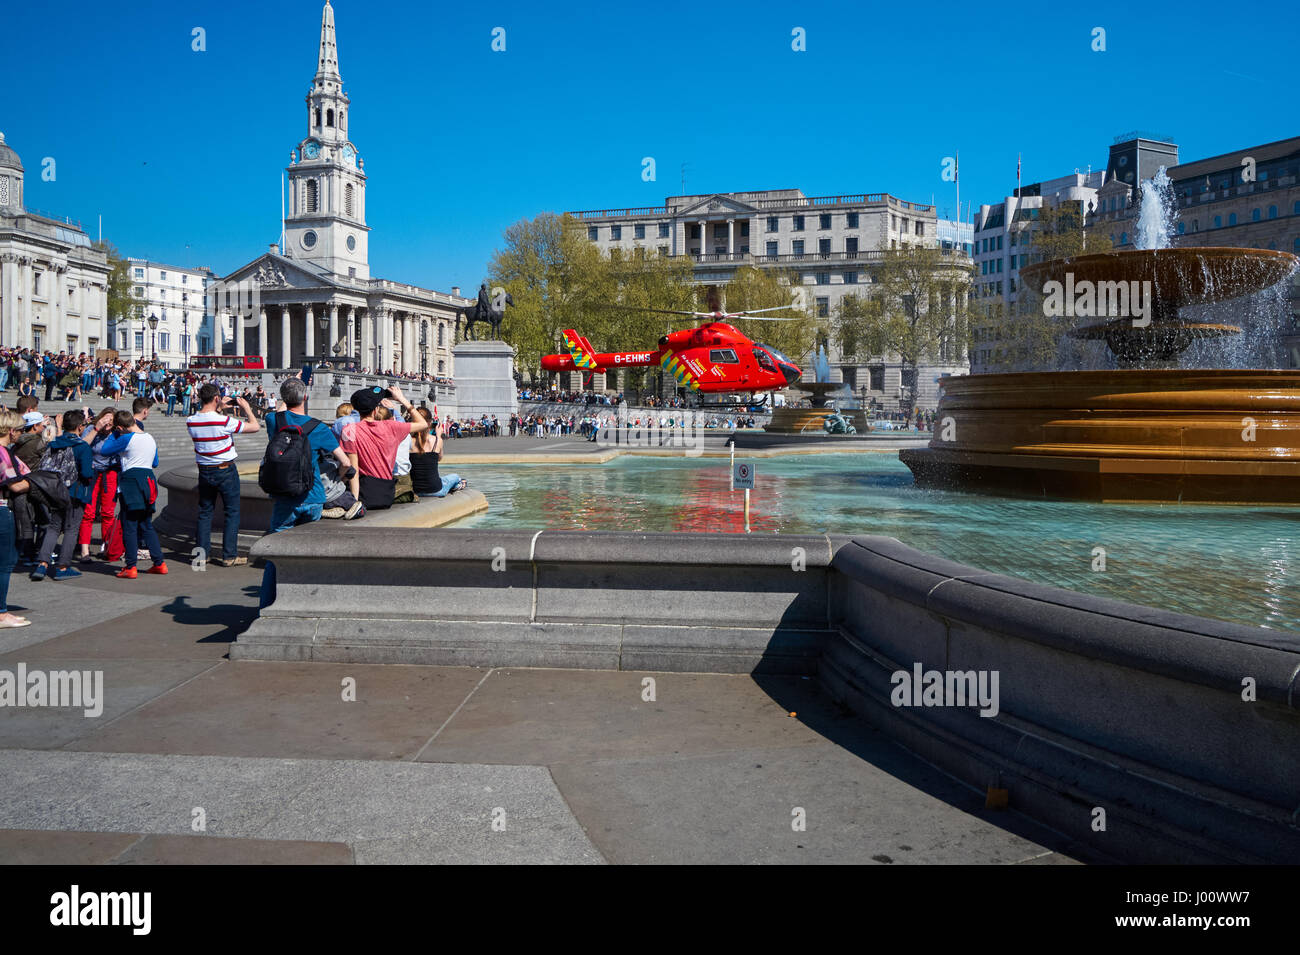 London's Air Ambulance atterra a Trafalgar Square in risposta a un incidente nelle vicinanze, Londra England Regno Unito Regno Unito Foto Stock